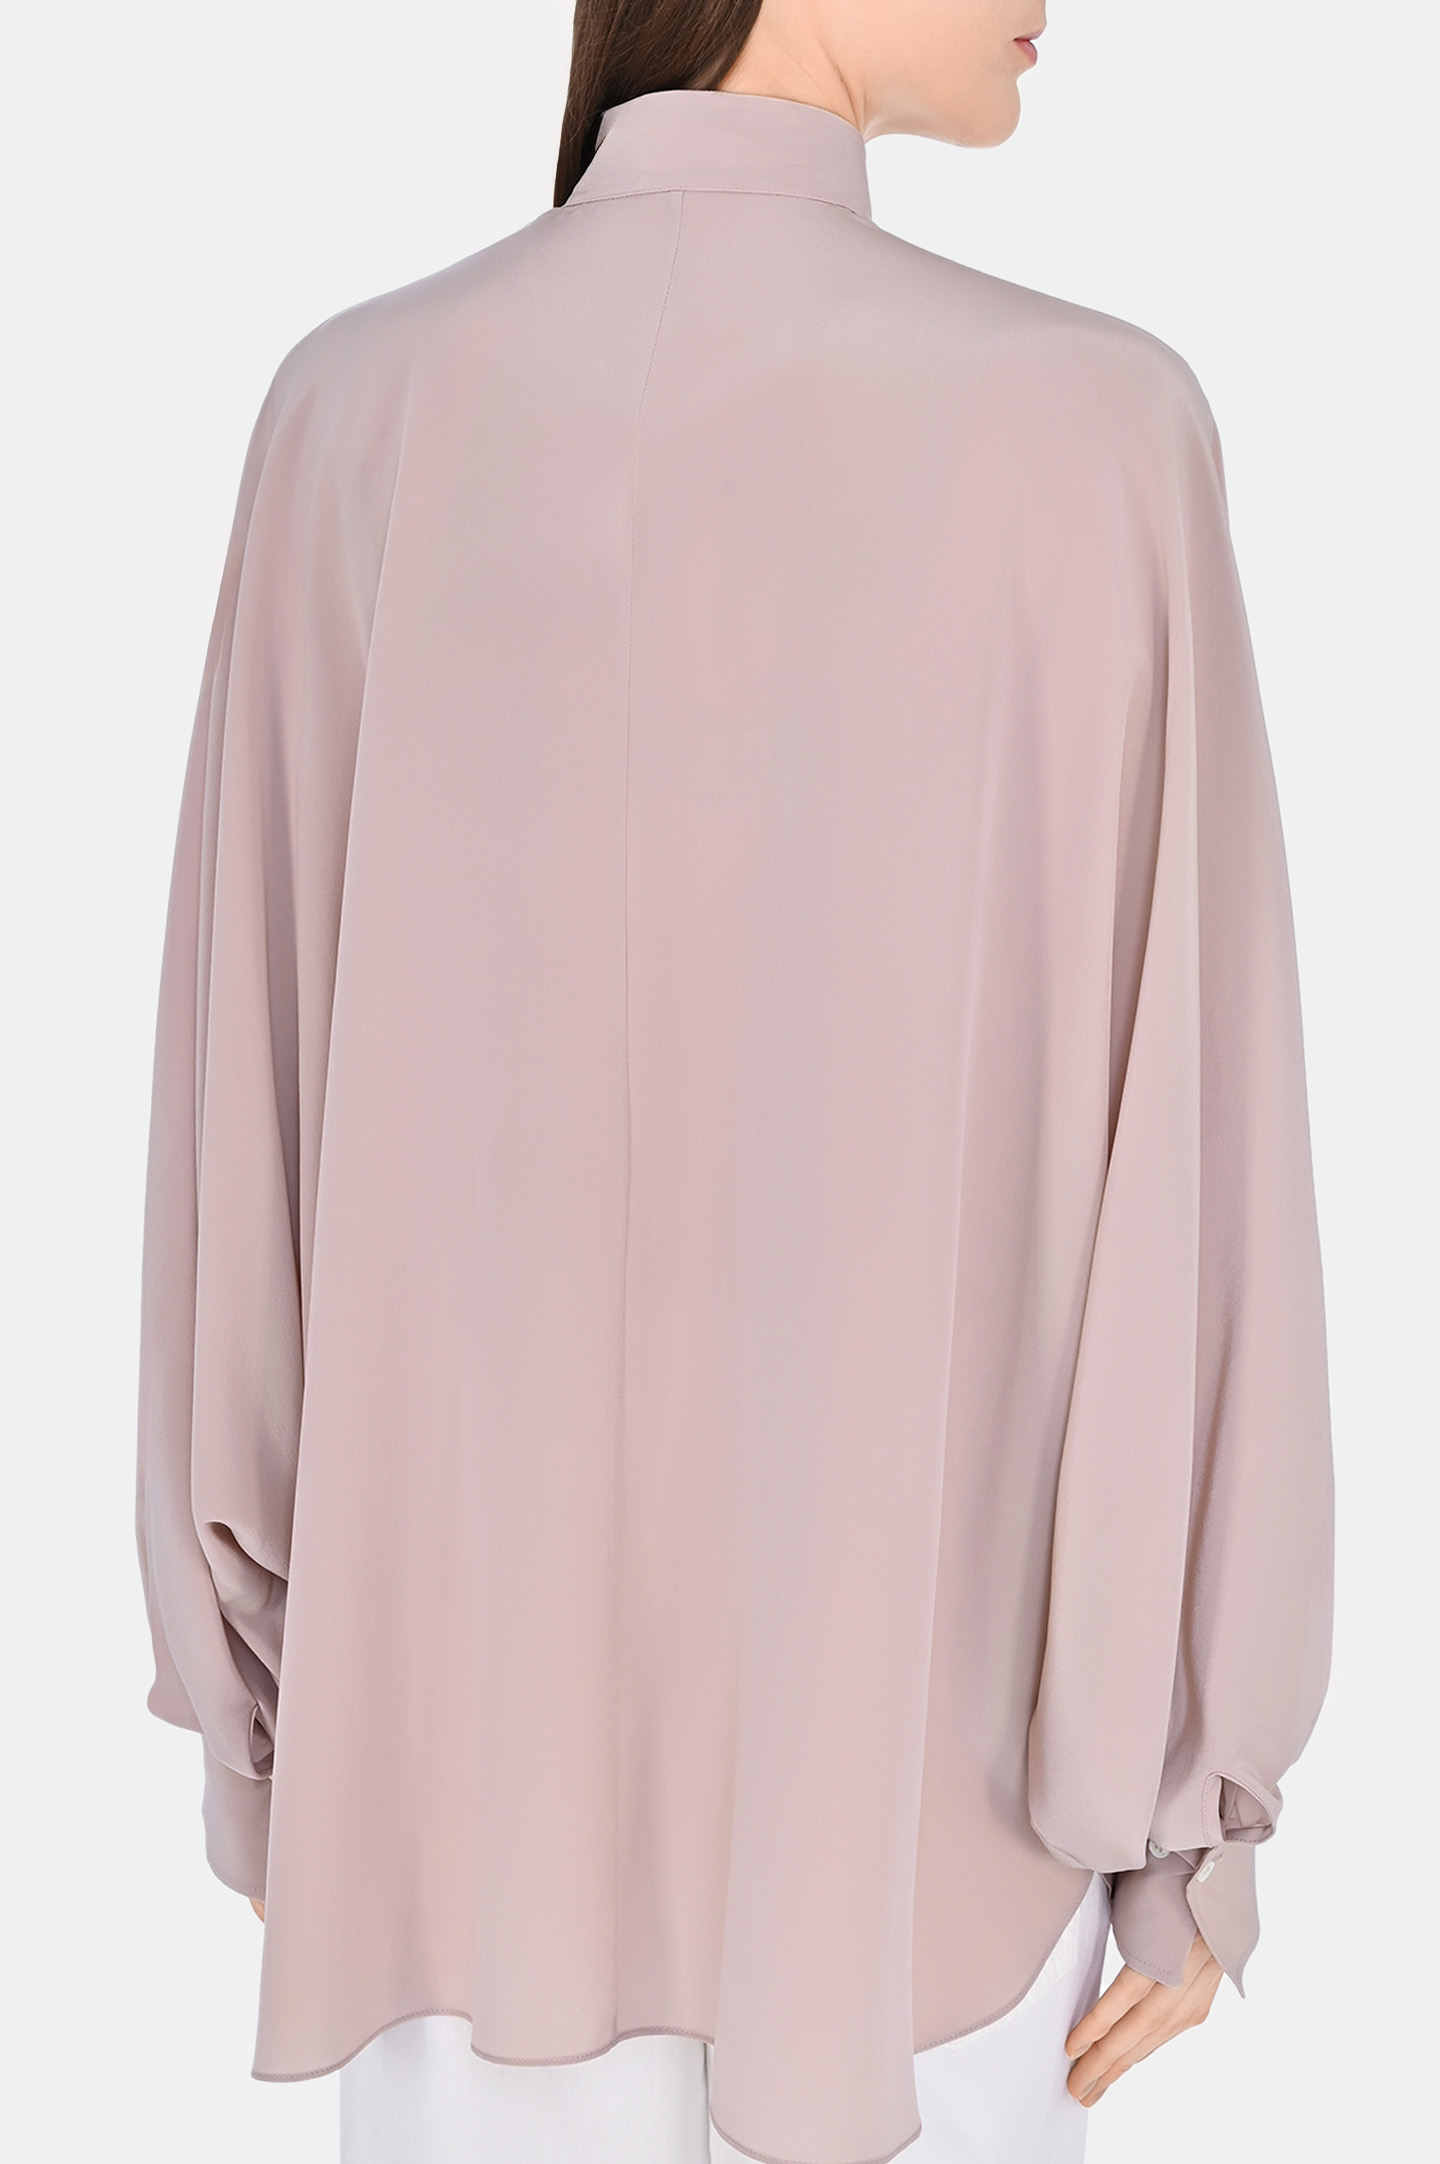 Блуза BRUNELLO  CUCINELLI MB993MK716, цвет: Персиковый, Женский